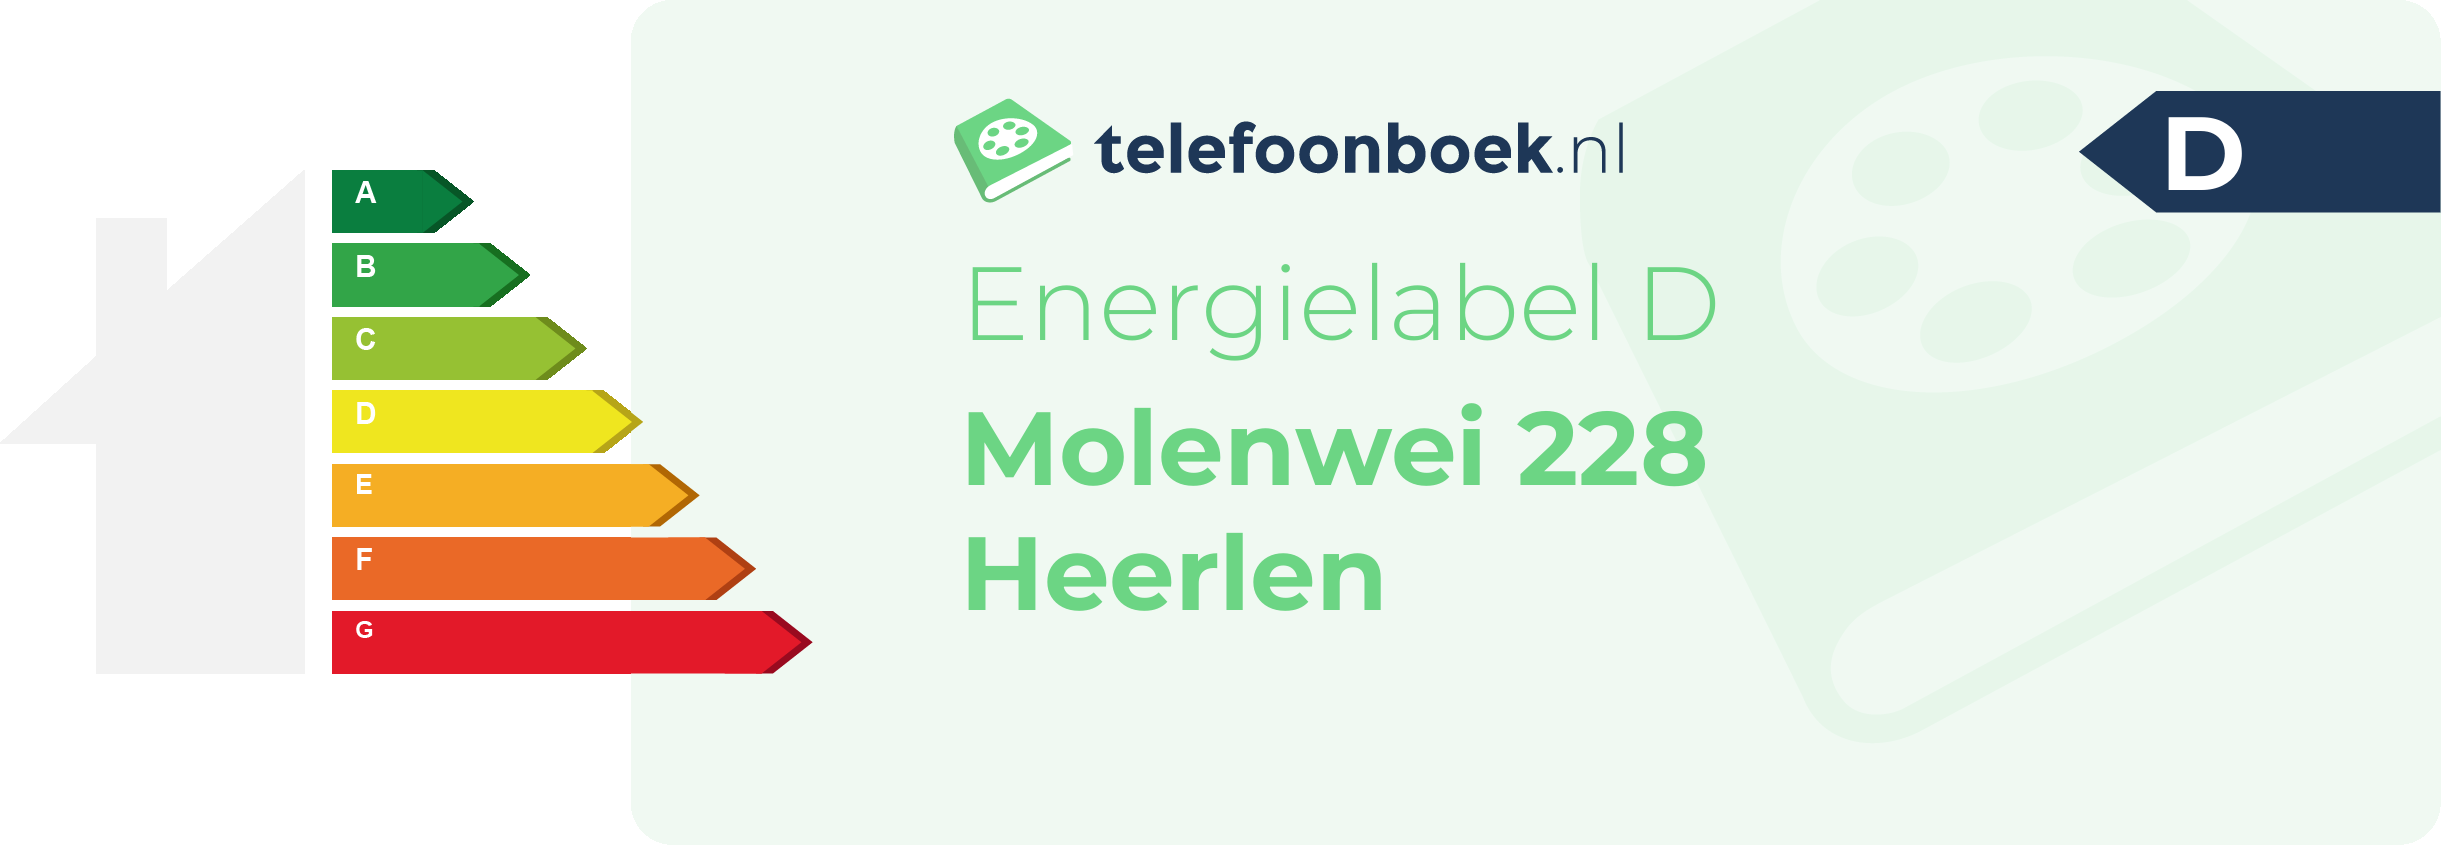 Energielabel Molenwei 228 Heerlen